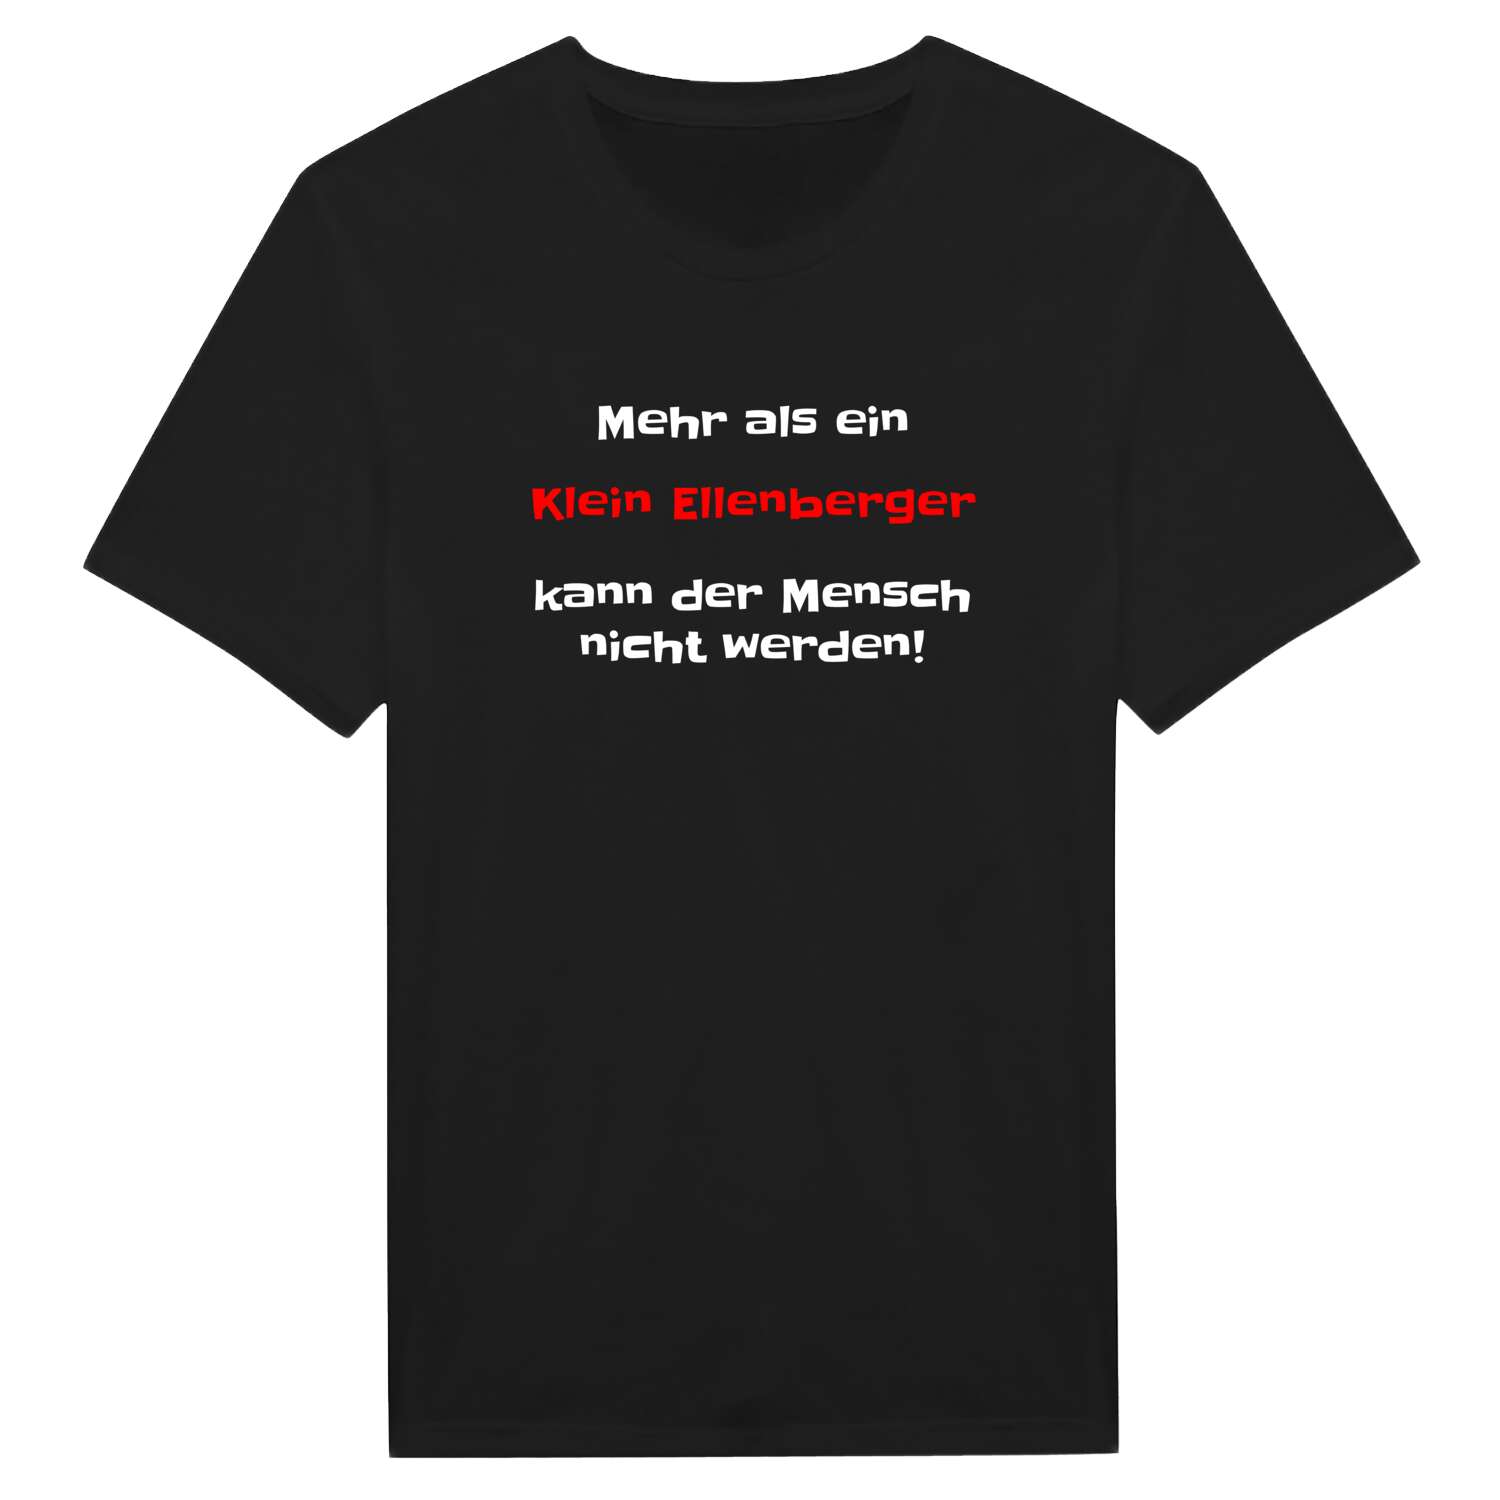 Klein Ellenberg T-Shirt »Mehr als ein«